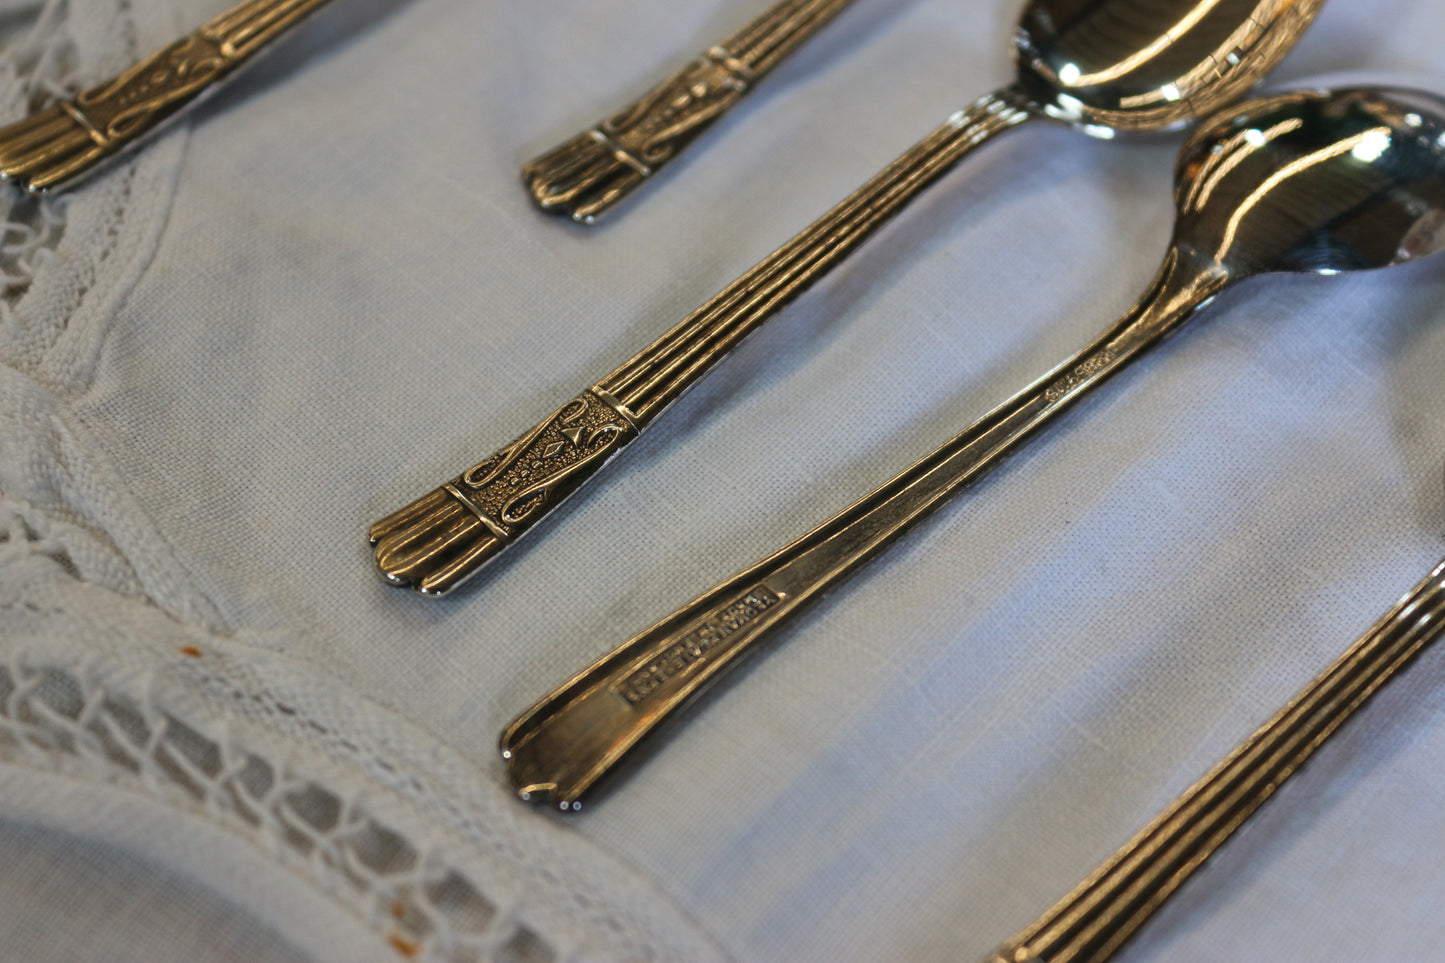 英國｜Yeoman Plate 英國製鍍銀盒裝小餐匙